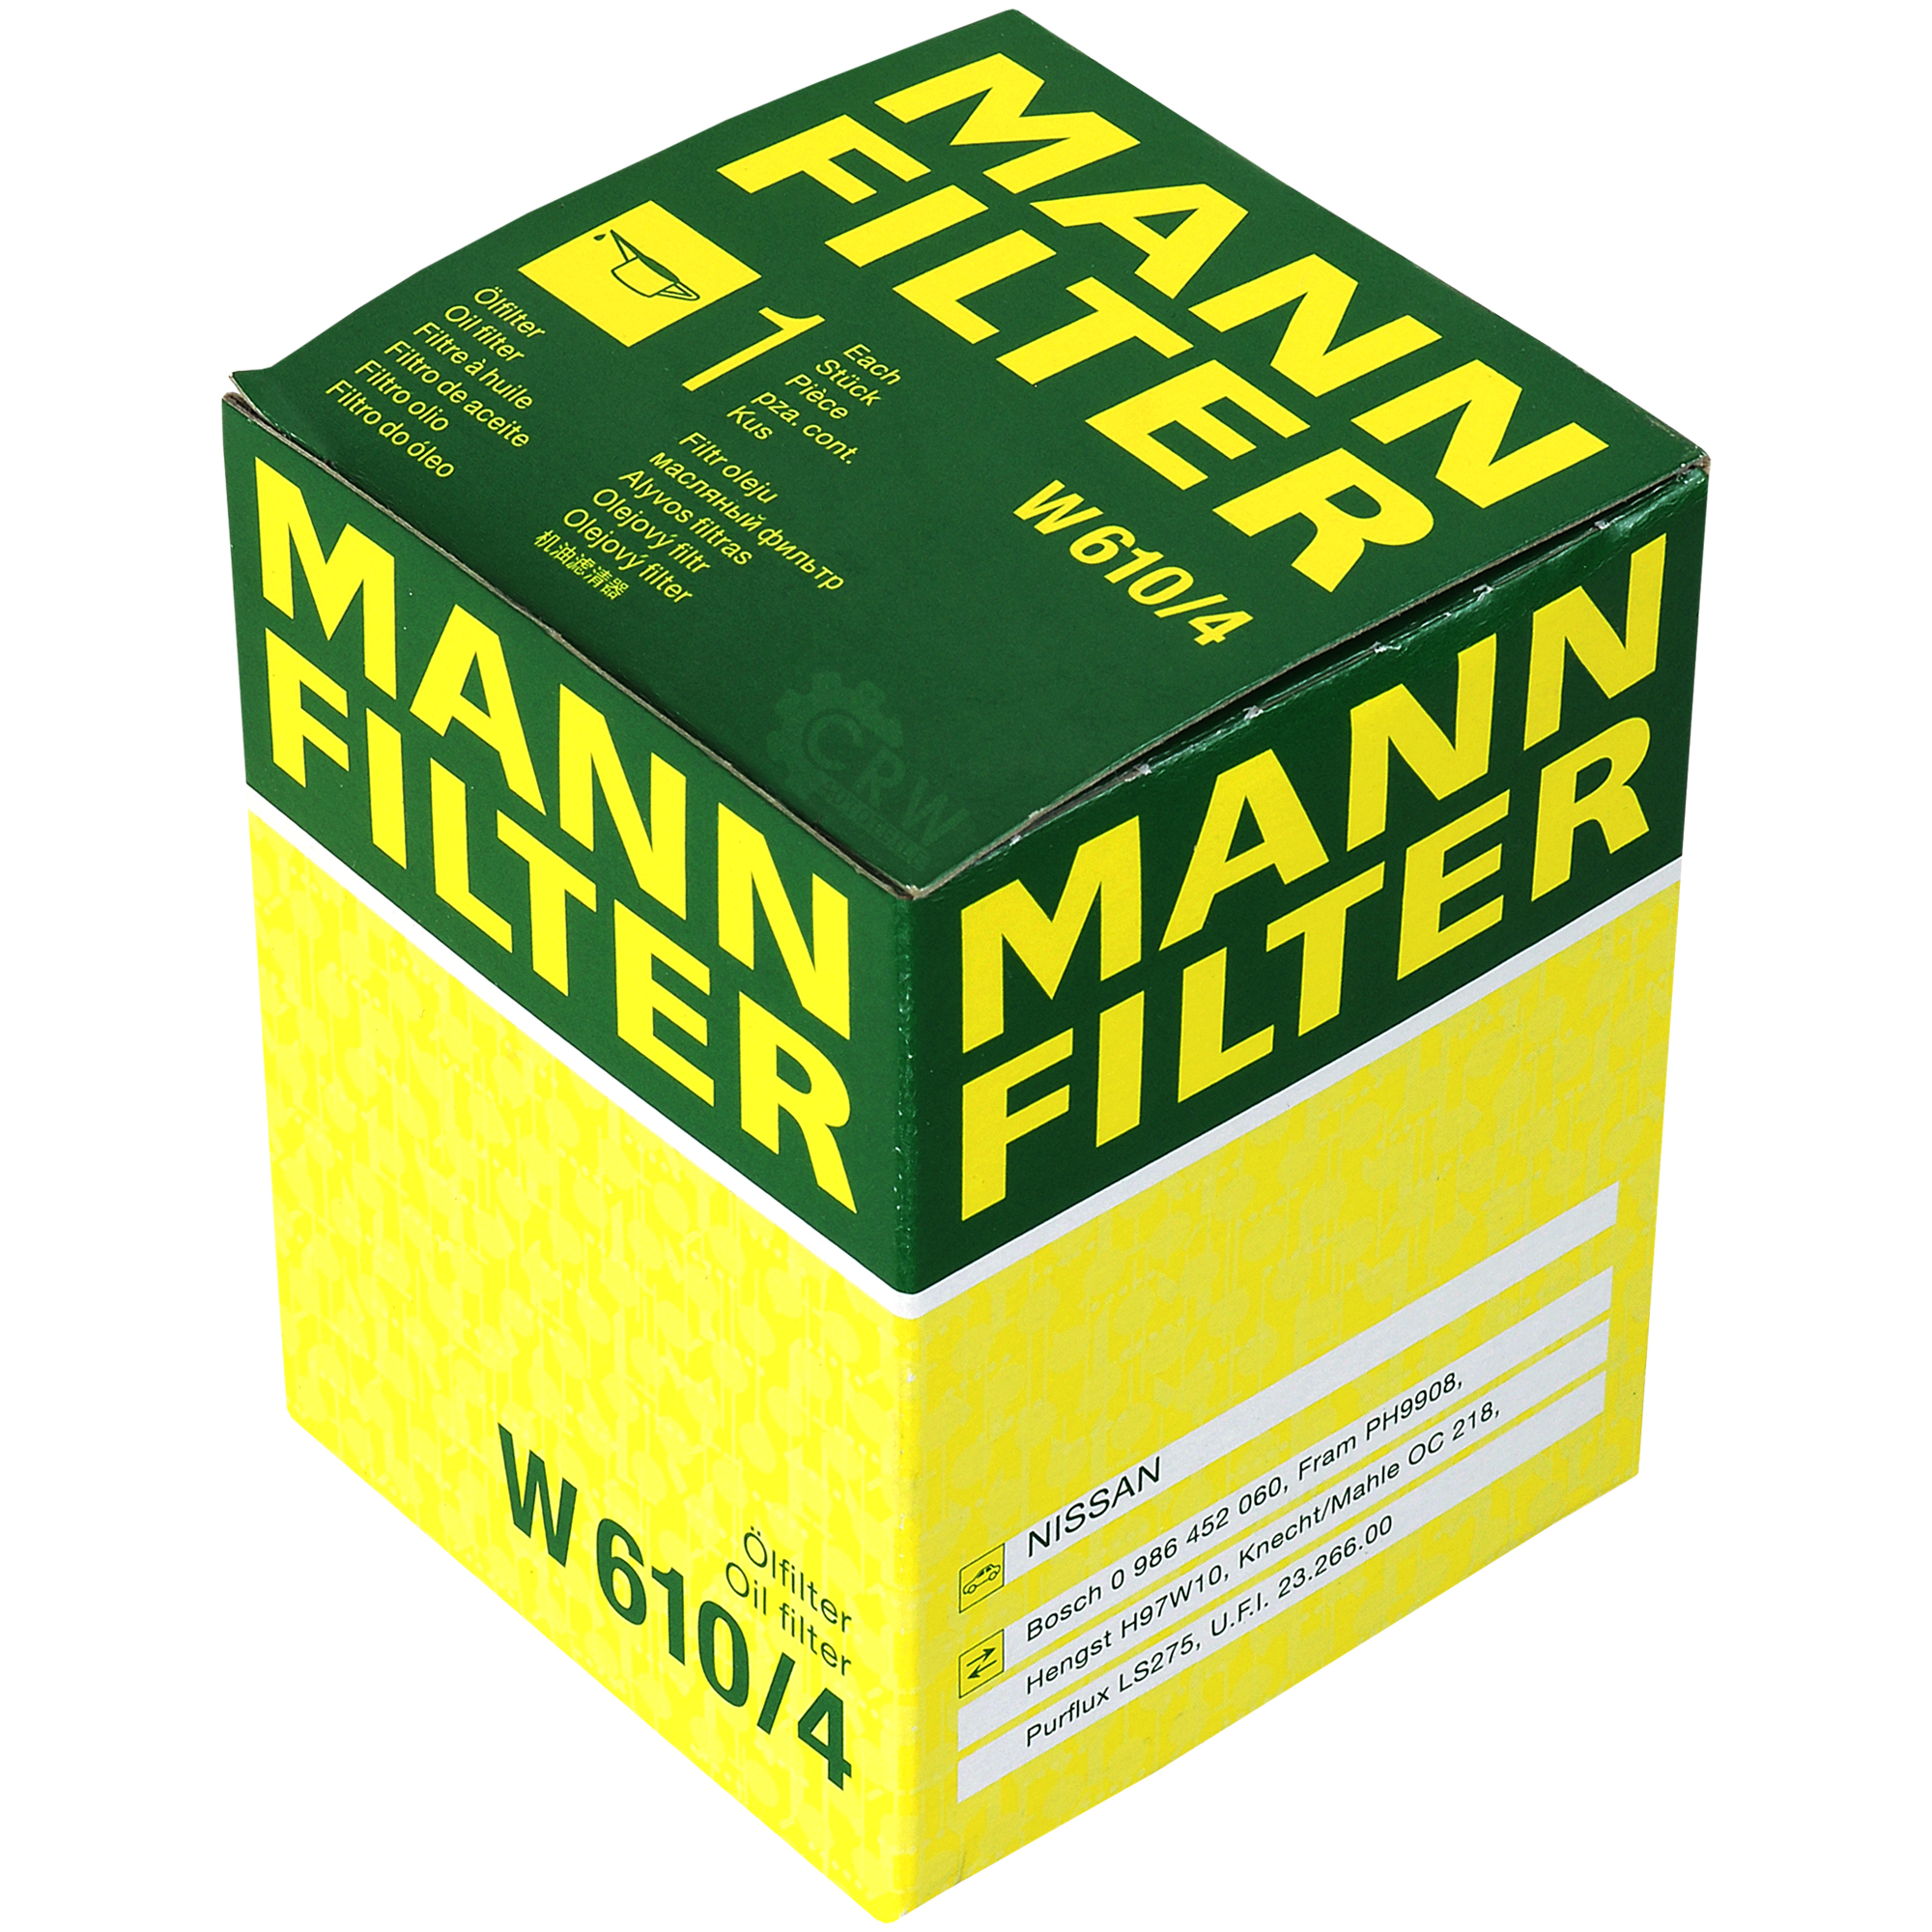 MANN-FILTER Ölfilter W 610/4 Oil Filter